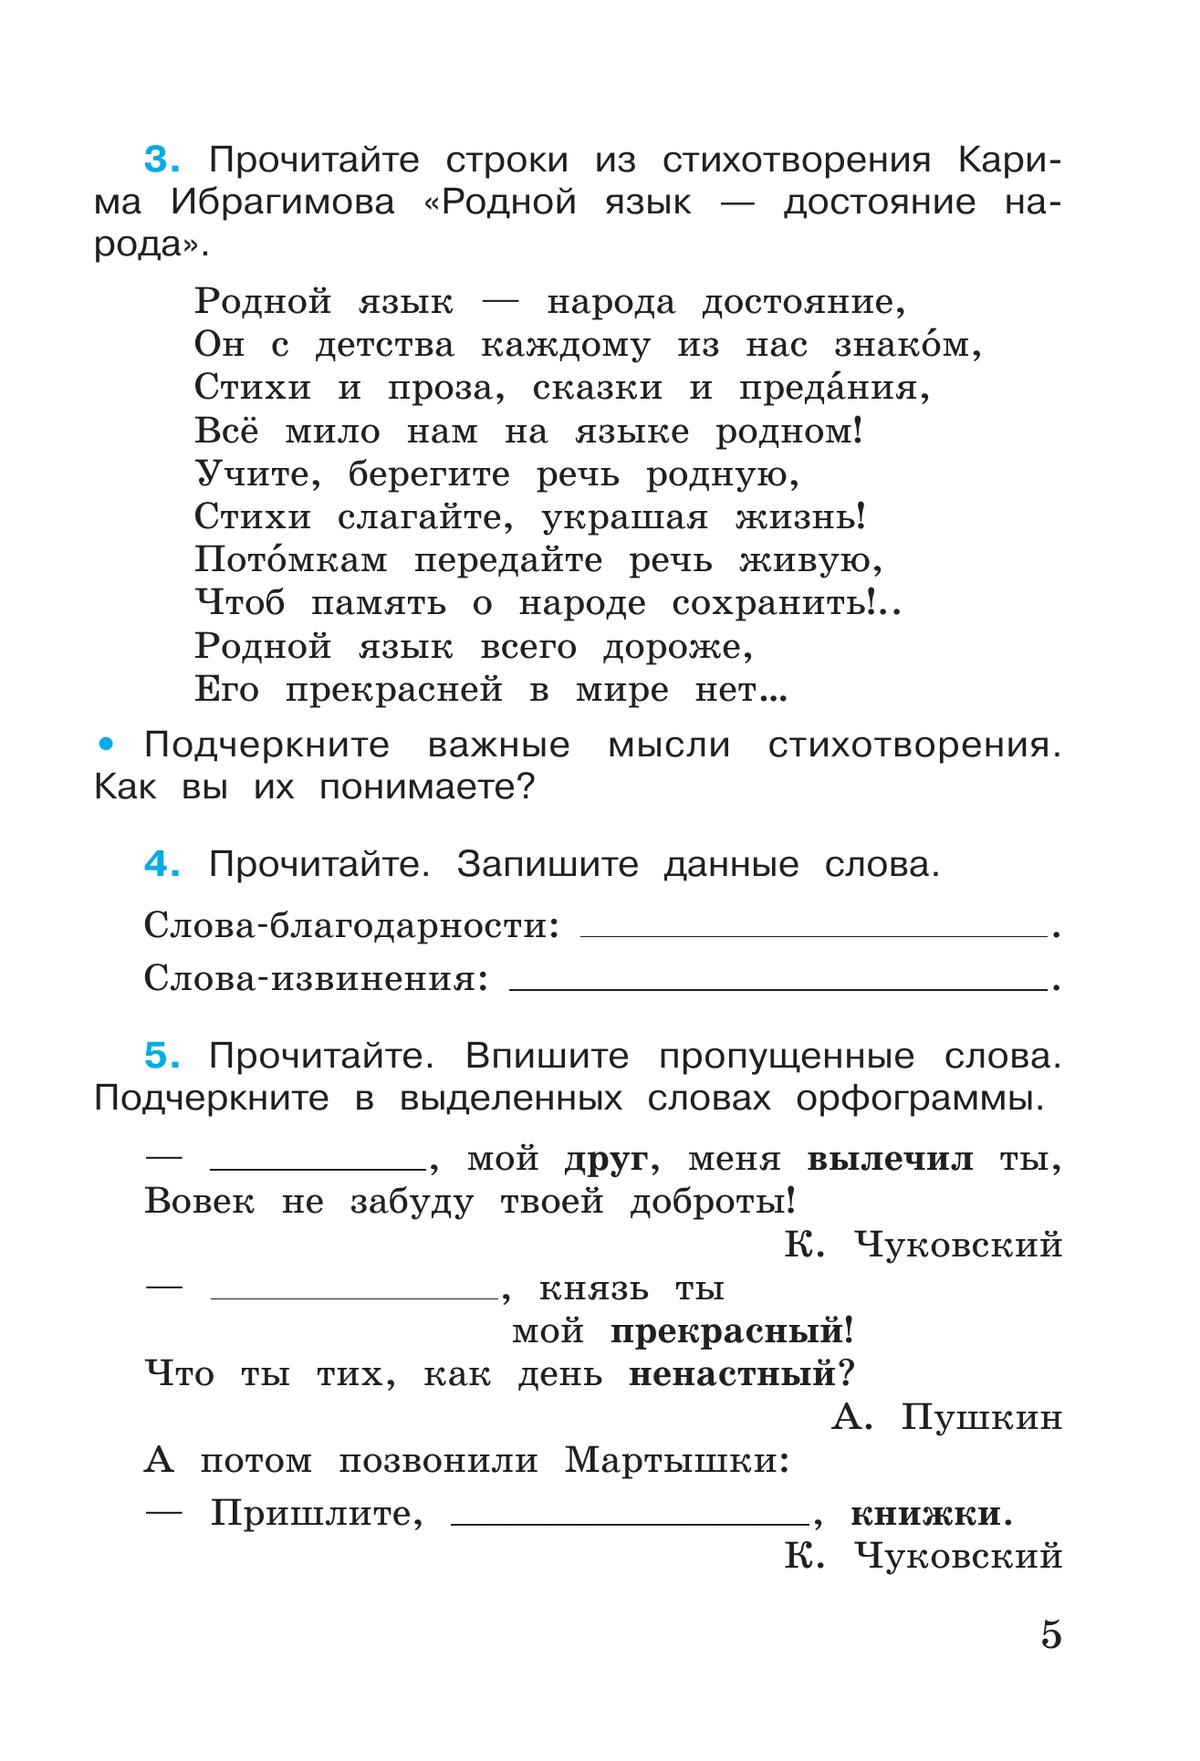 Русский язык. Рабочая тетрадь. 4 класс. В 2-х ч. Ч. 1 11